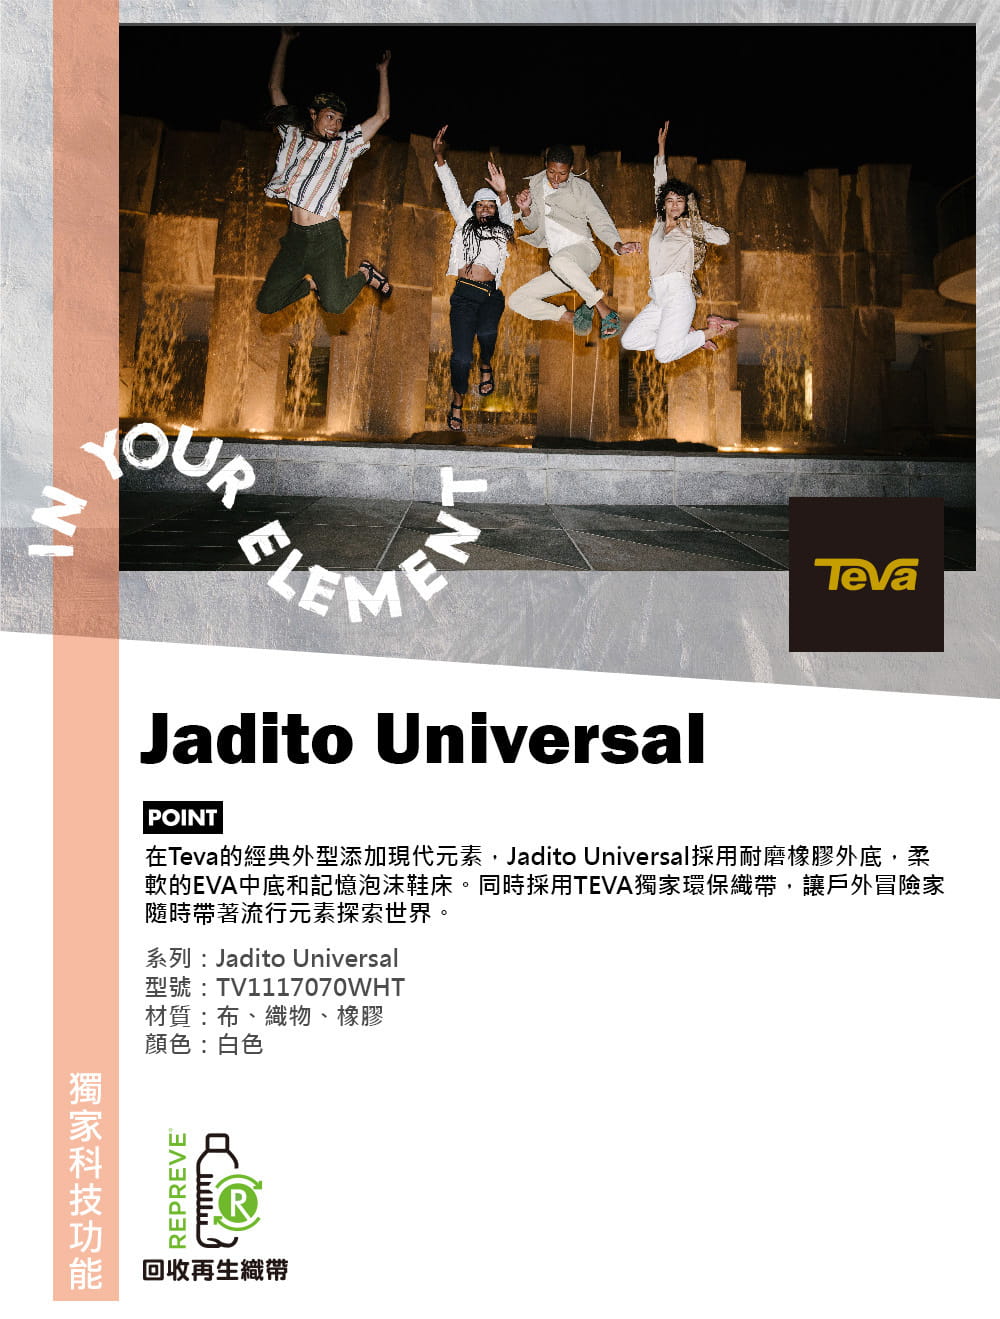 TEVA女 Jadito Universal 環保織帶軟墊厚底涼鞋白色-TV1117070WHT 6